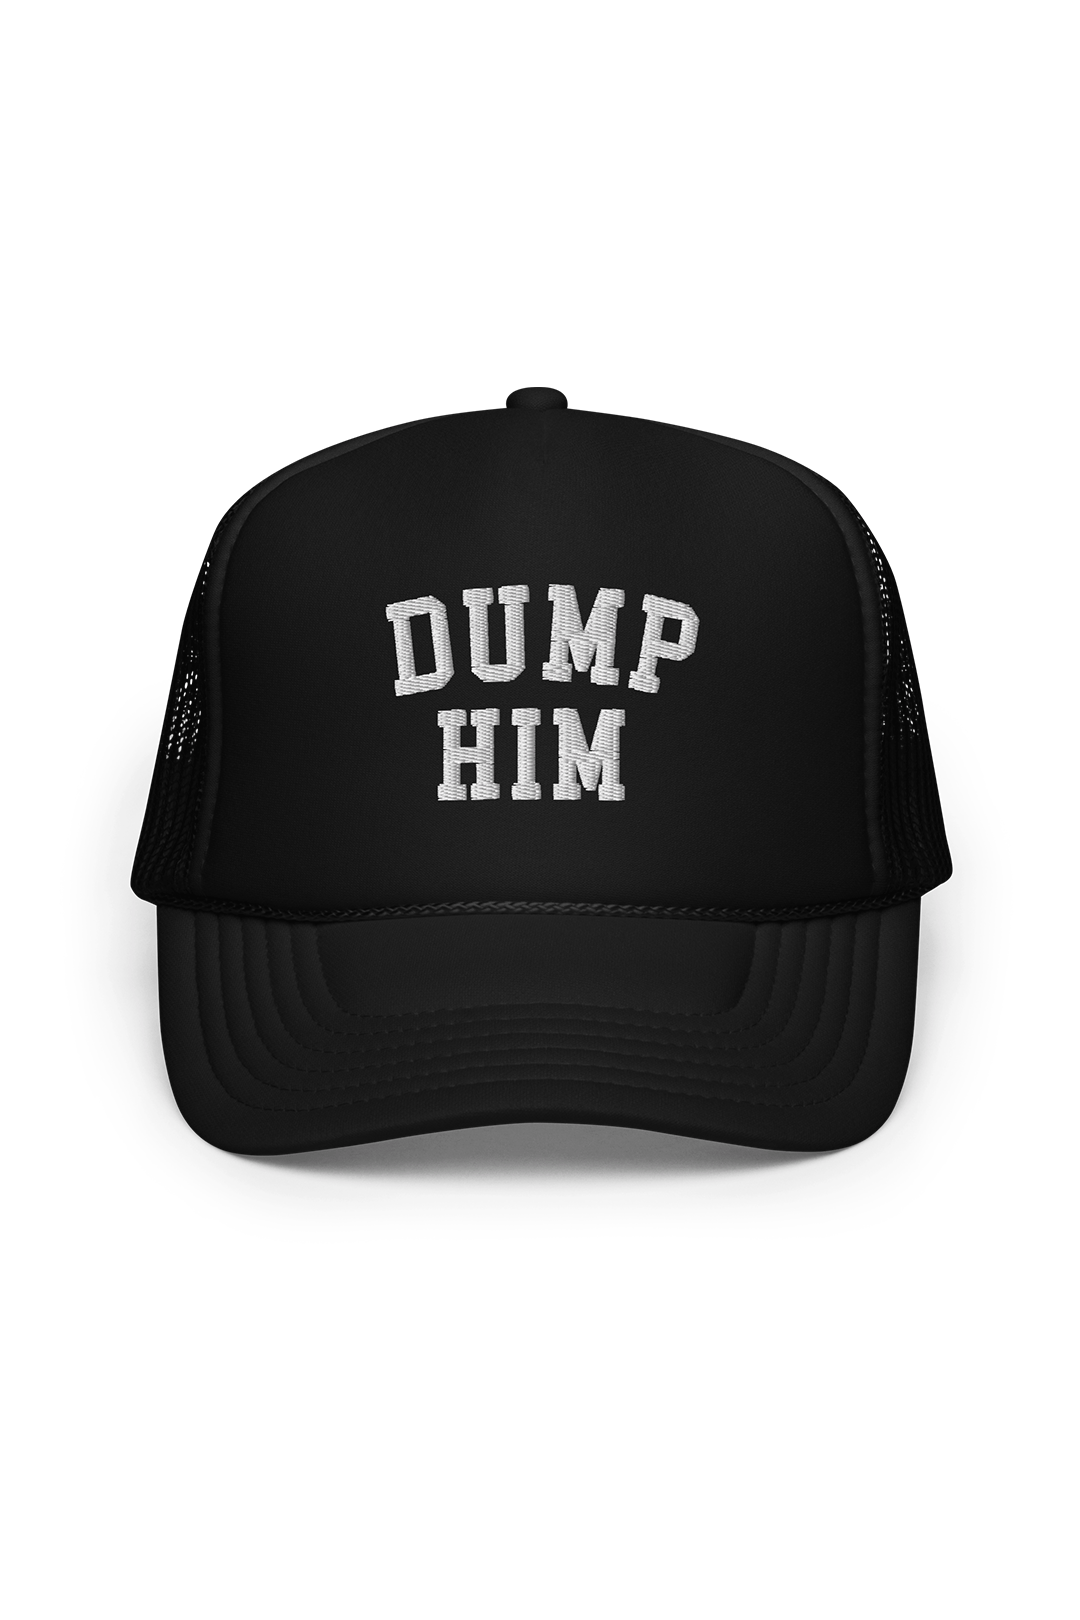 Dump Him Foam Trucker Hat